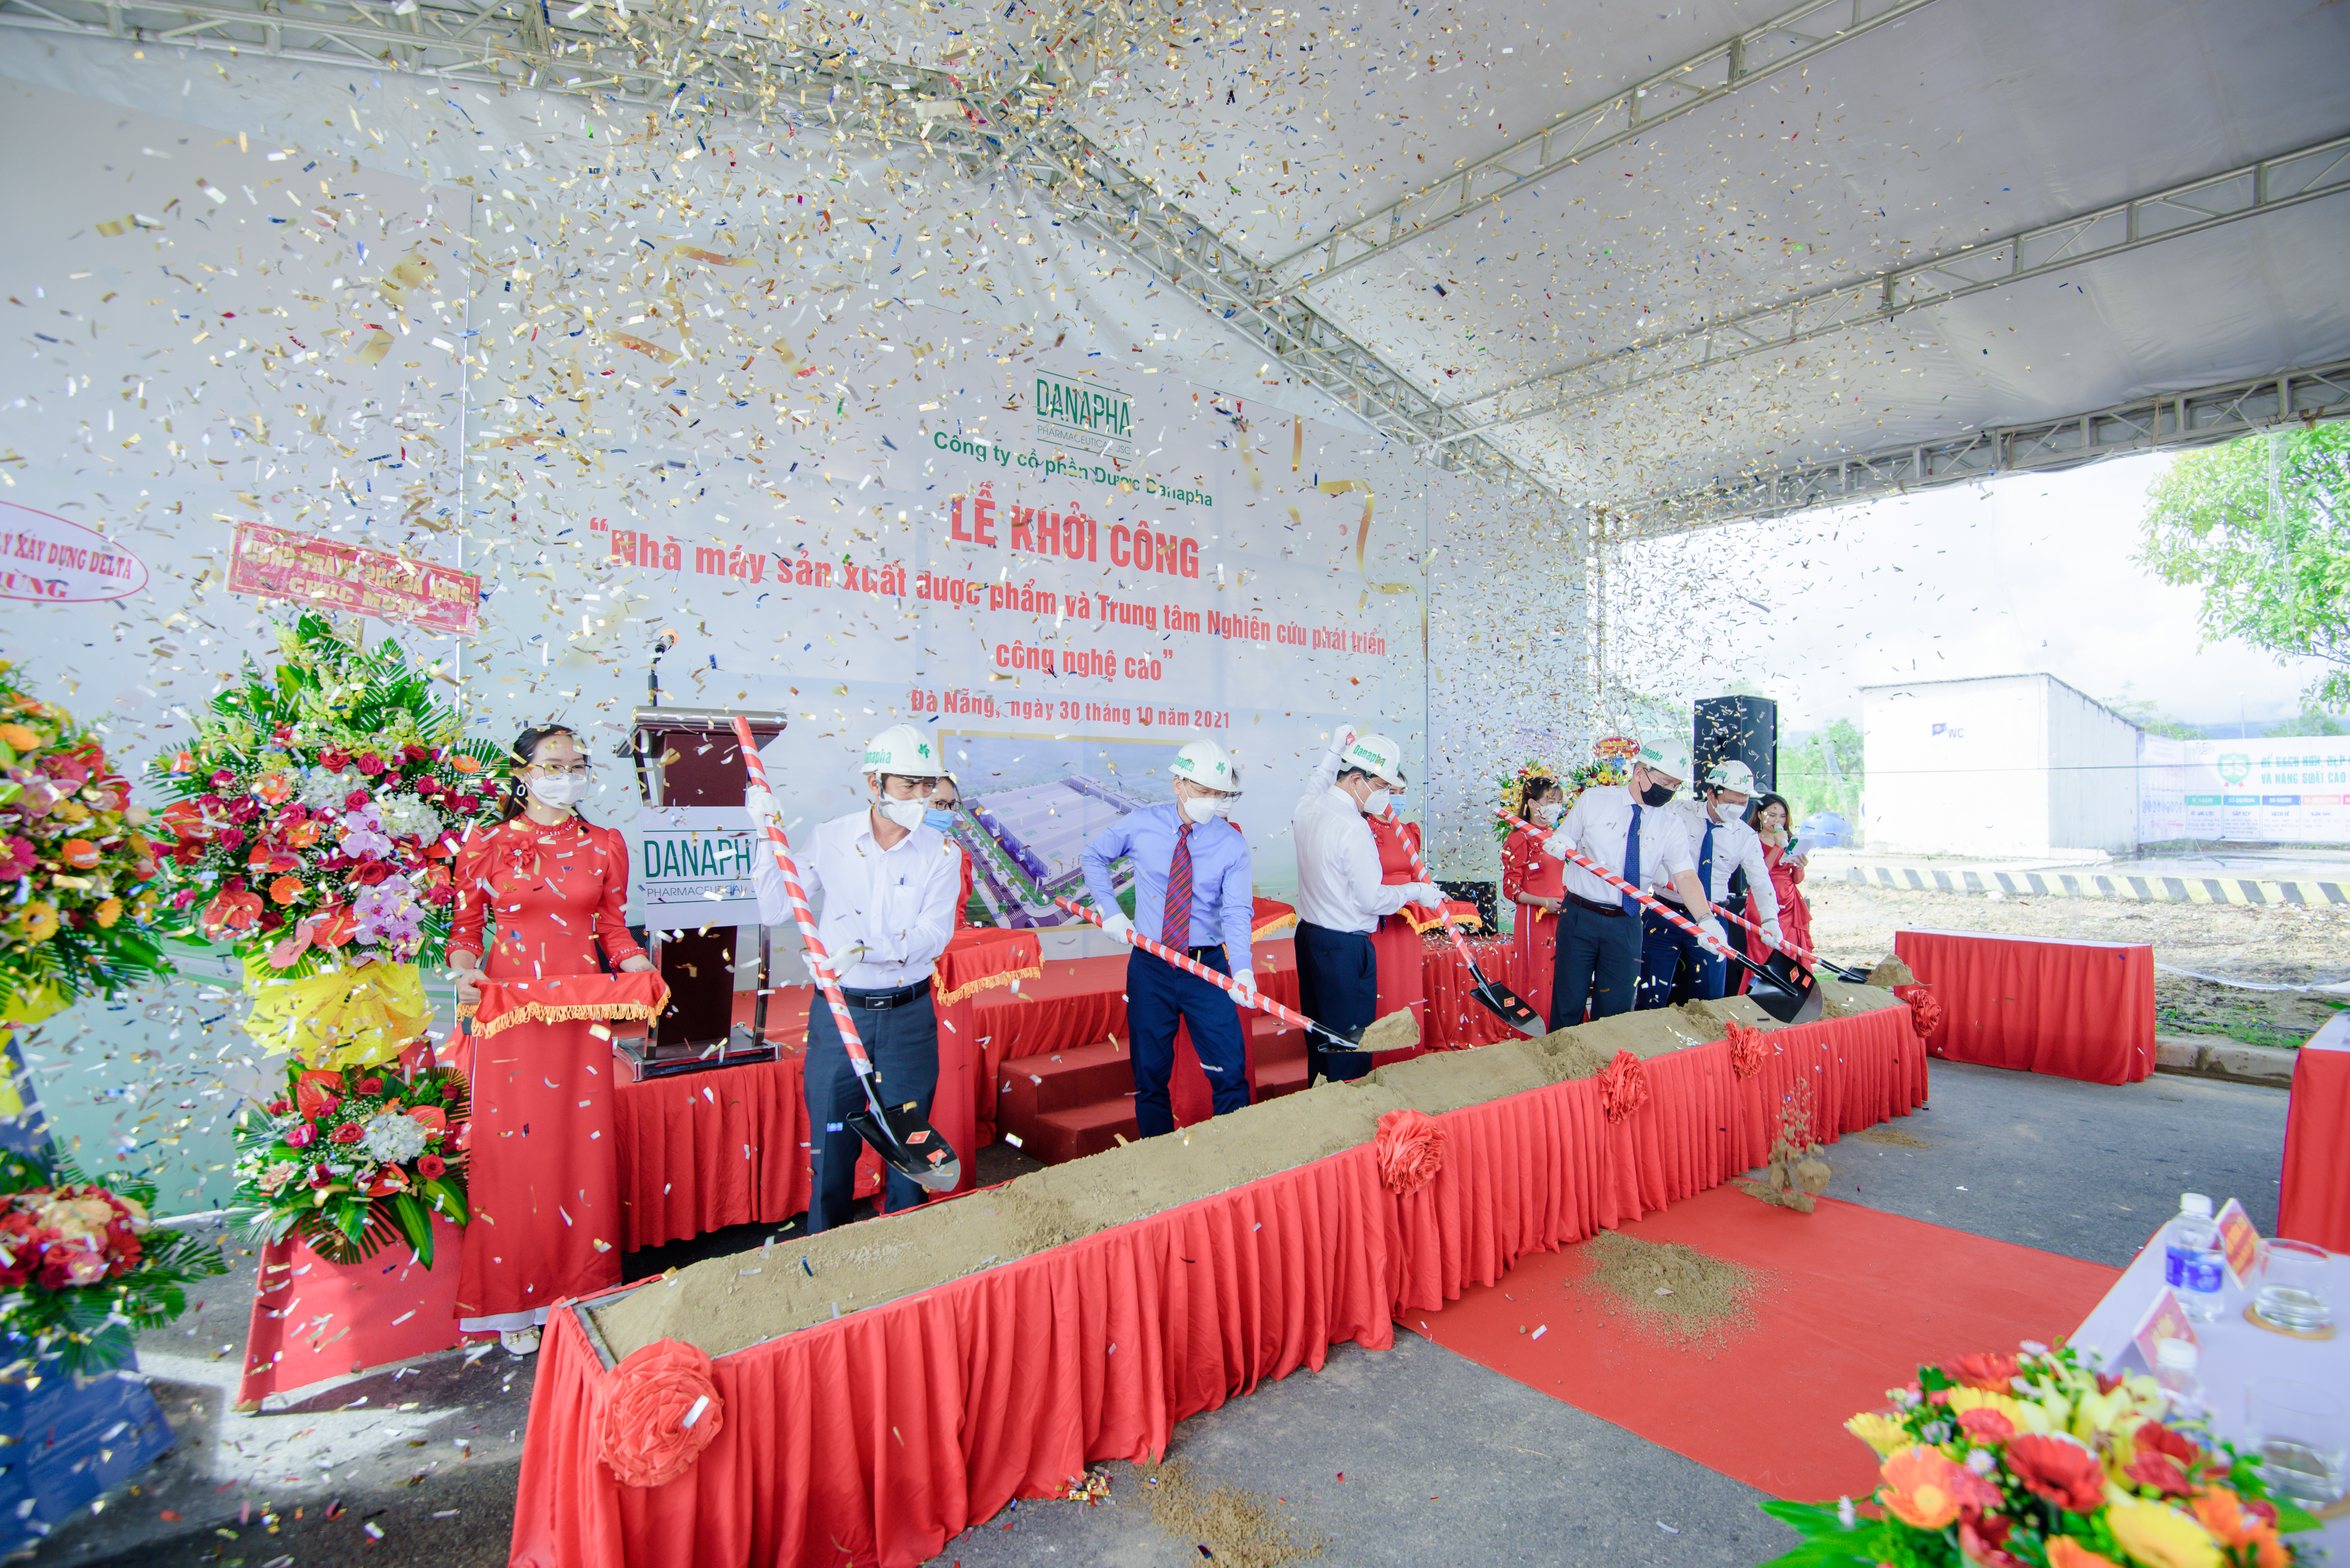 Lễ khởi công “Nhà máy sản xuất dược phẩm và Trung tâm Nghiên cứu phát triển công nghệ cao” Danapha tại Khu công nghệ cao Tp. Đà Nẵng